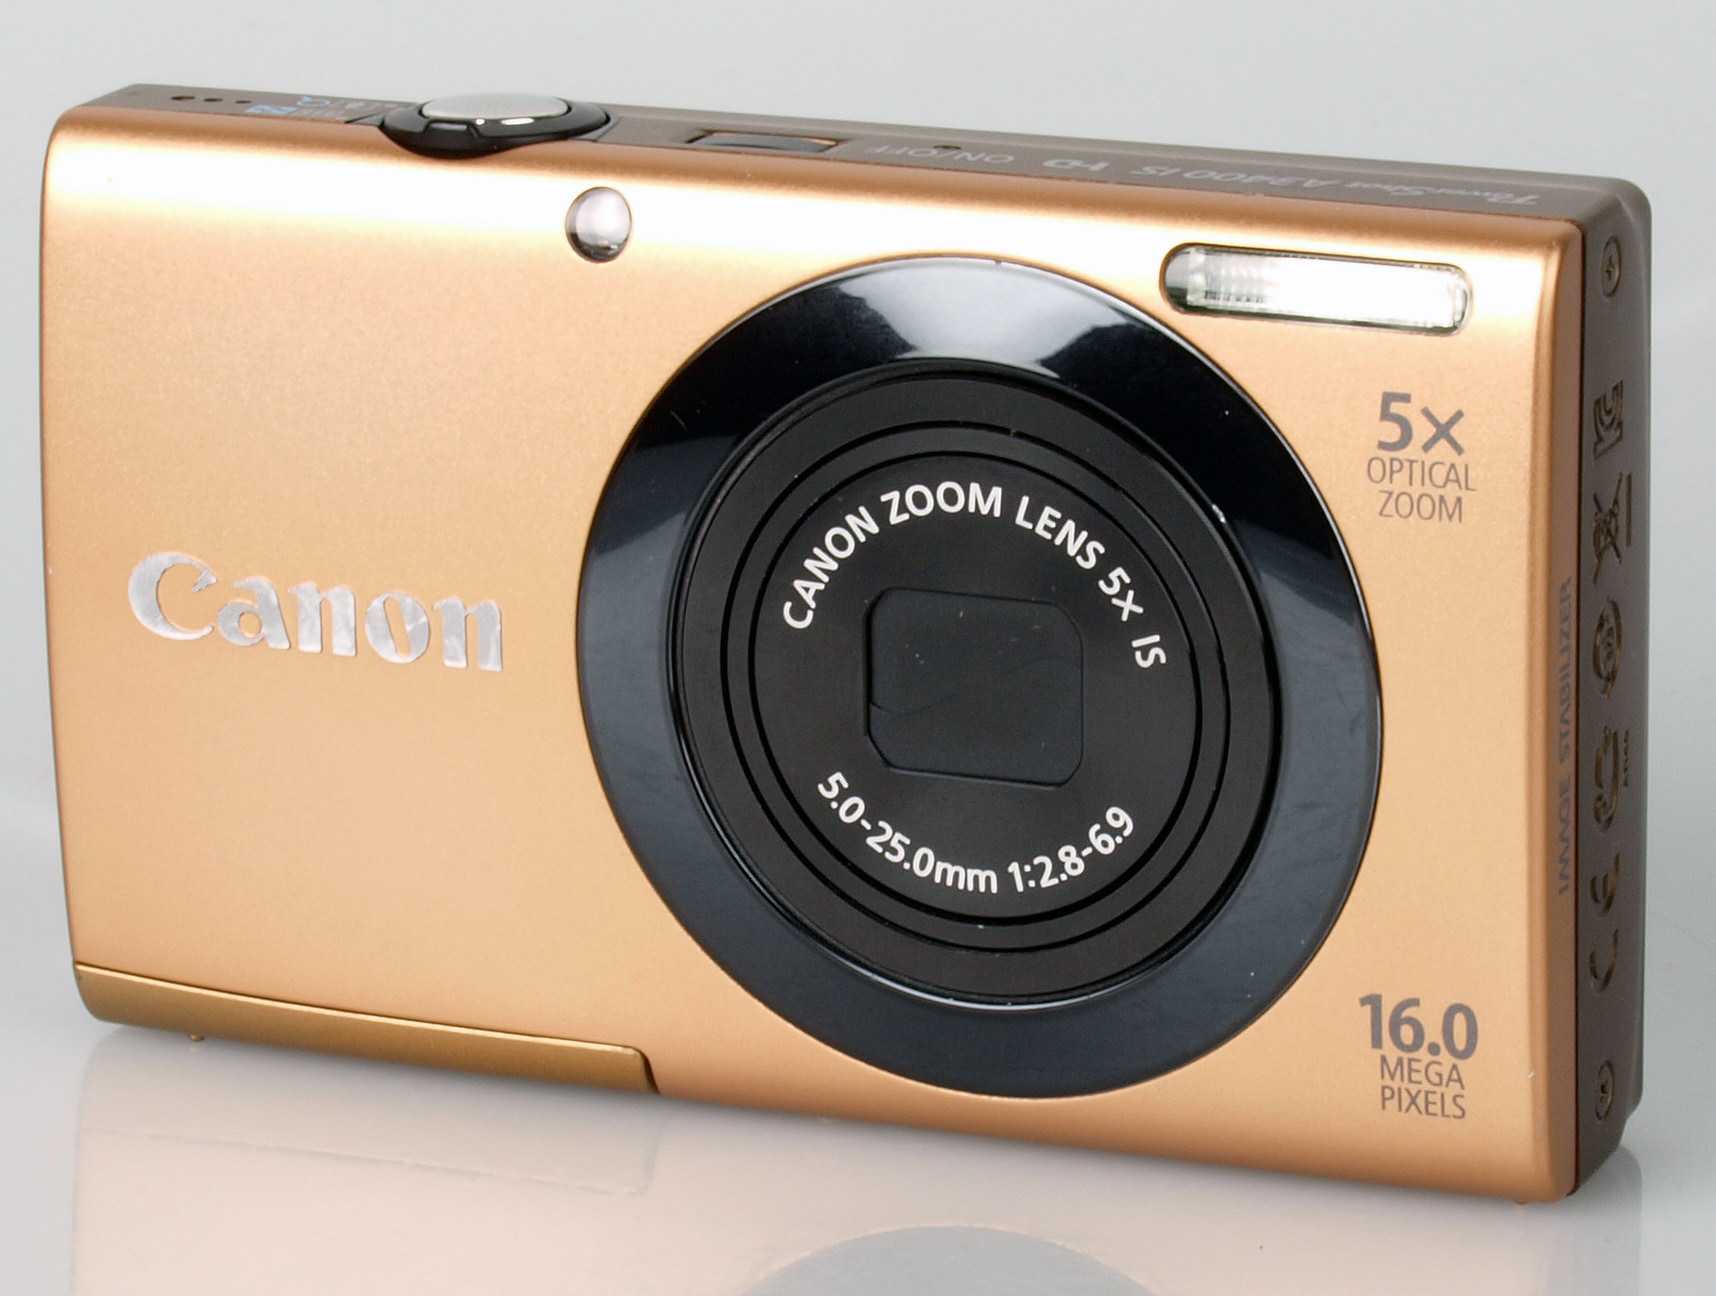 Фотоаппарат canon powershot a3400 is gold — купить, цена и характеристики, отзывы